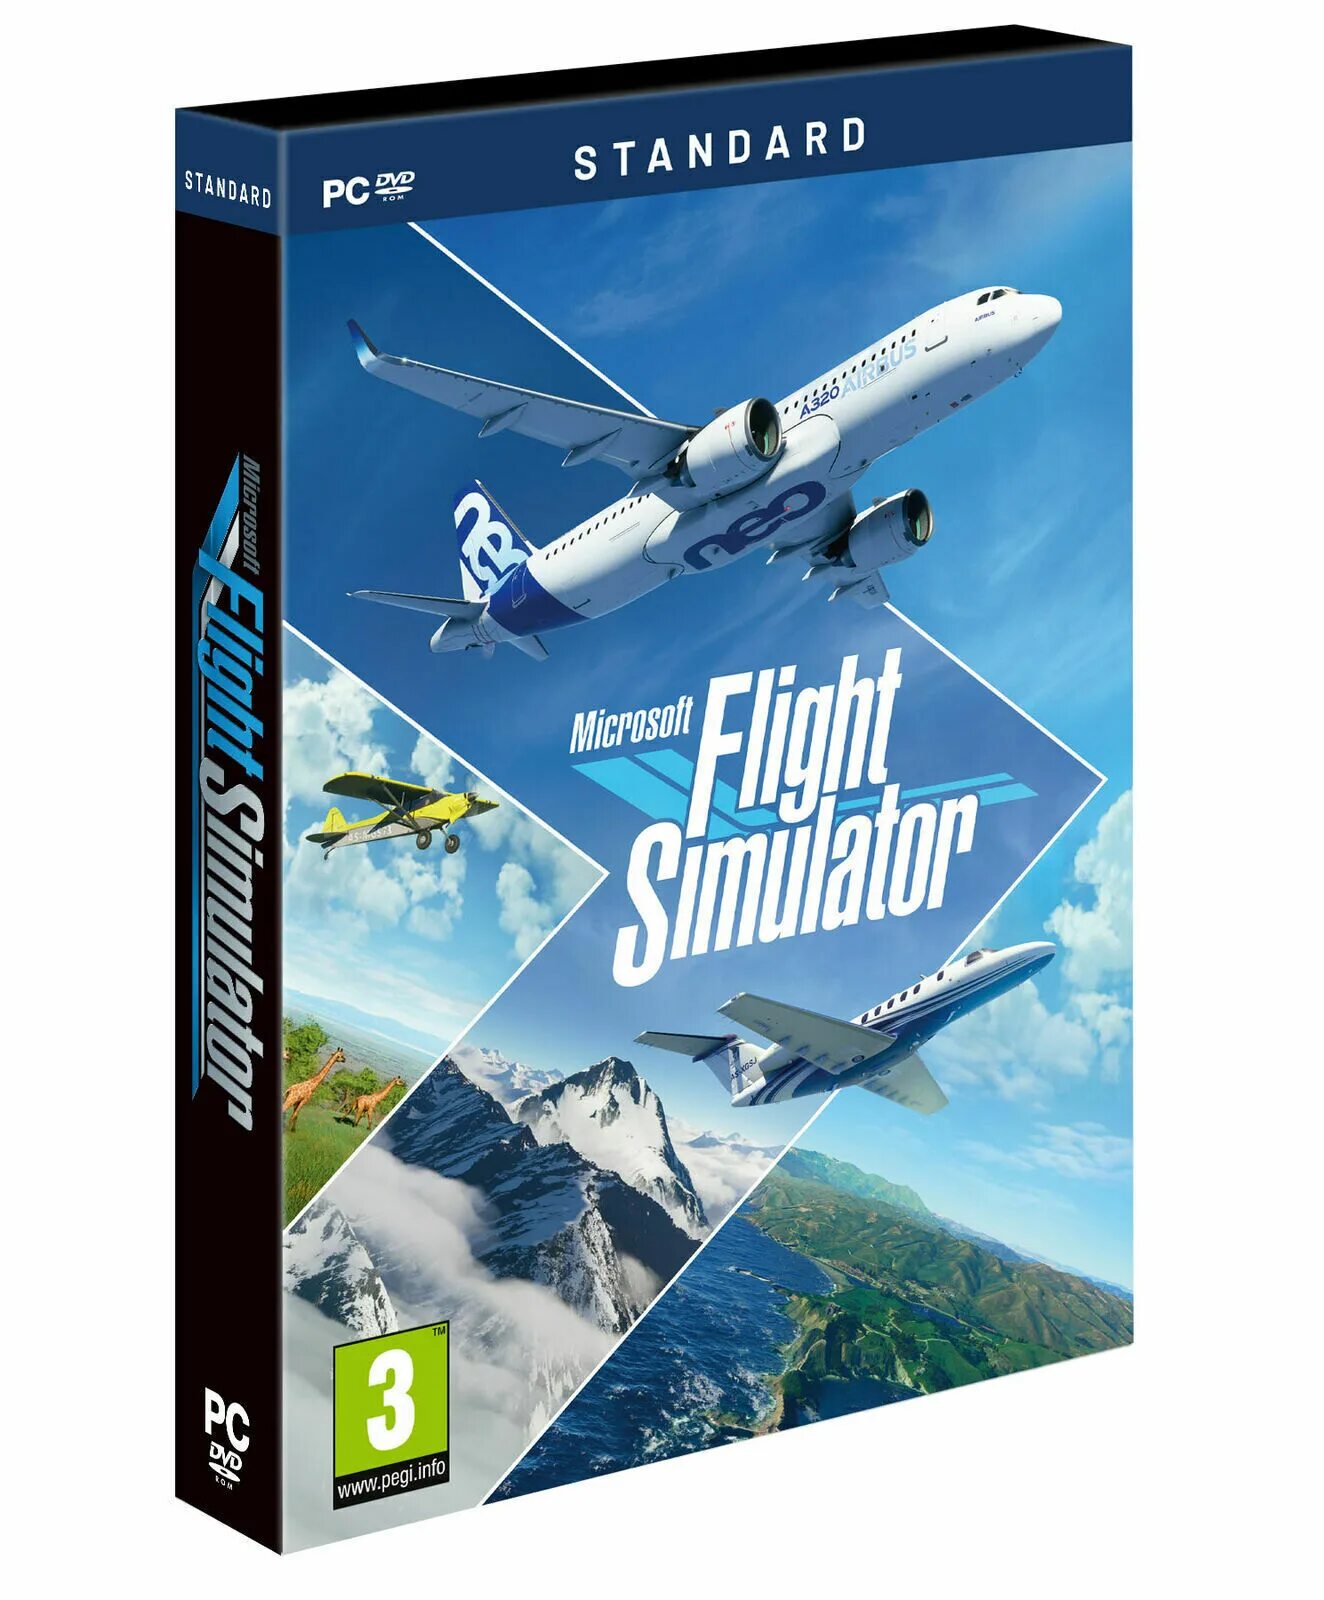 Майкрософт симулятор 2020 купить. MS Flight Simulator 2020 Xbox. Microsoft Flight Simulator (2020). Microsoft Flight Simulator 2020 Deluxe Edition. Майкрософт Флайт симулятор 2020.